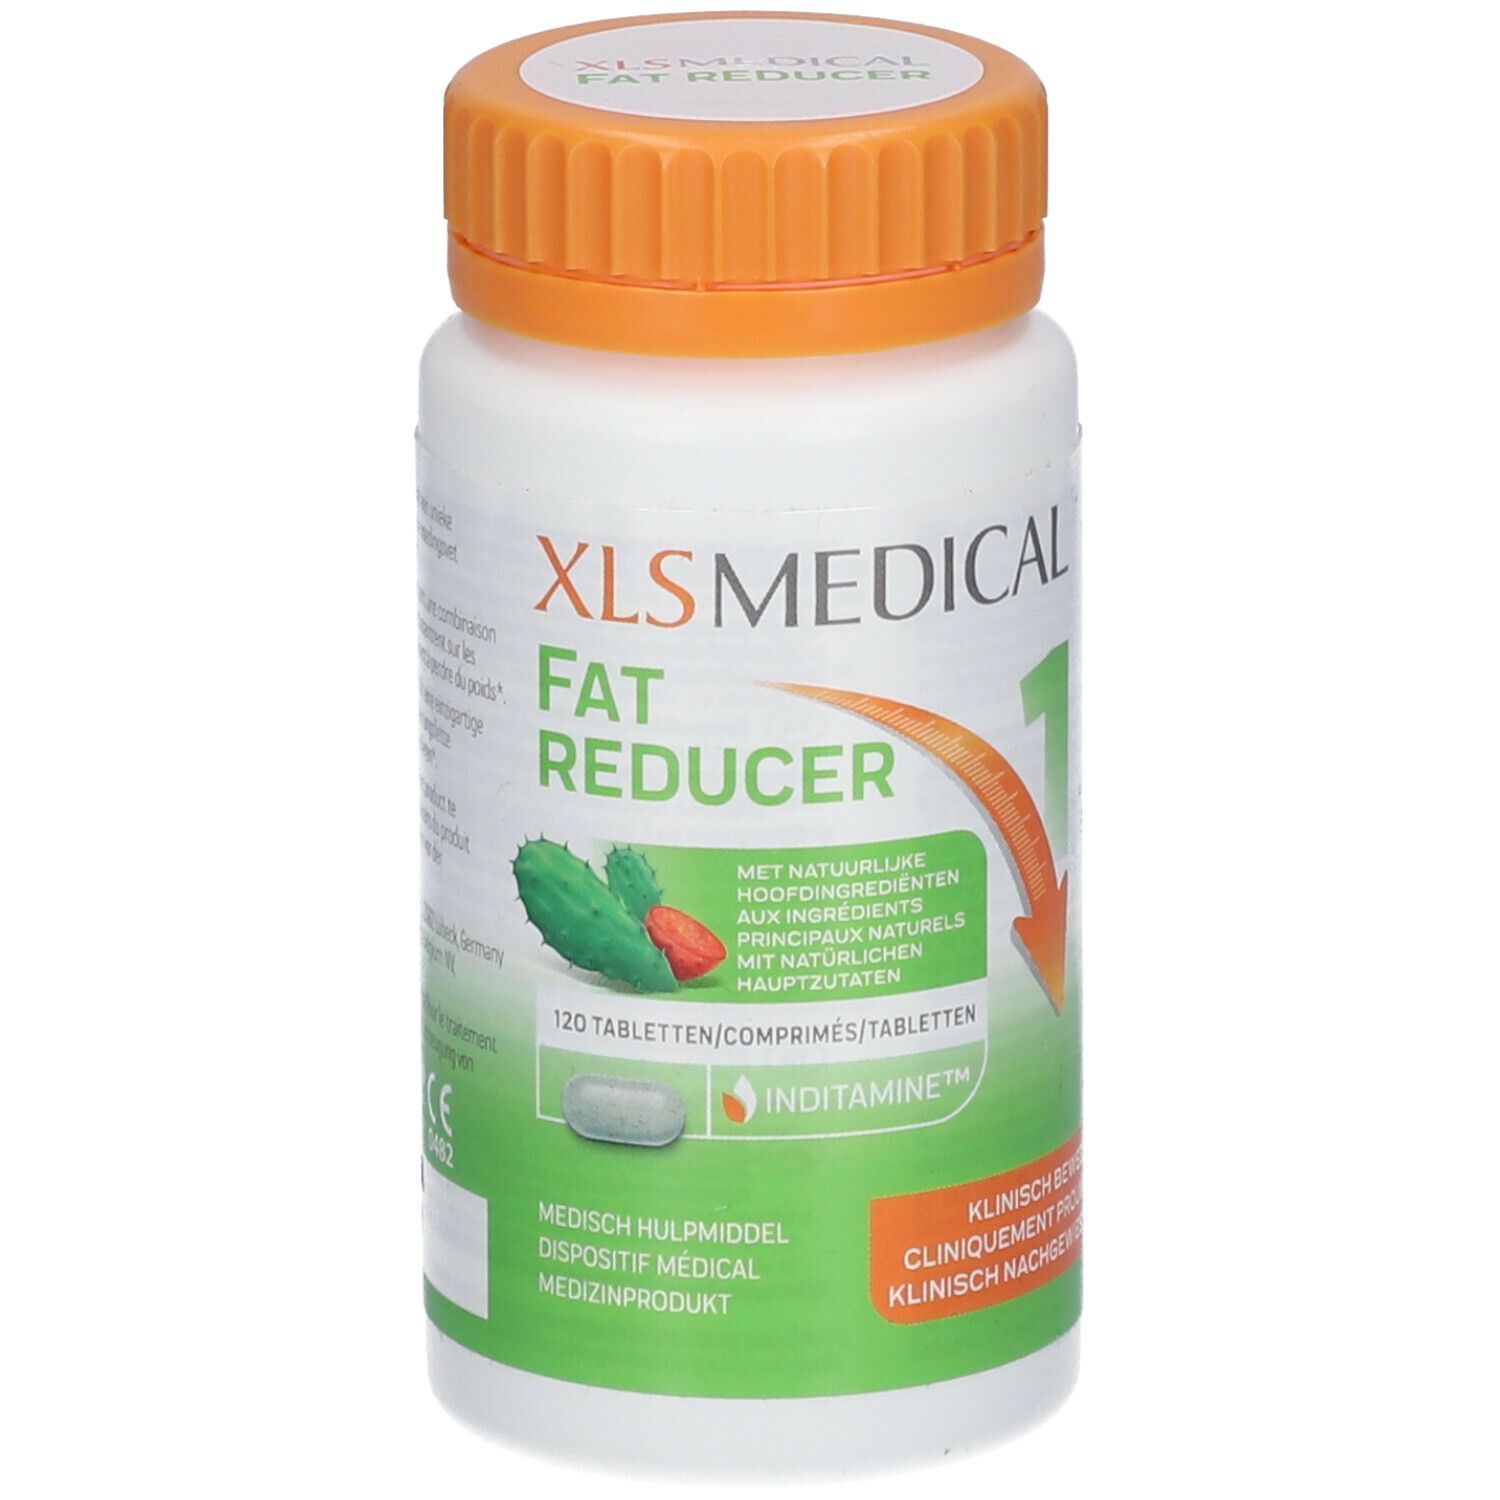 XLS Medical Fat Reducer